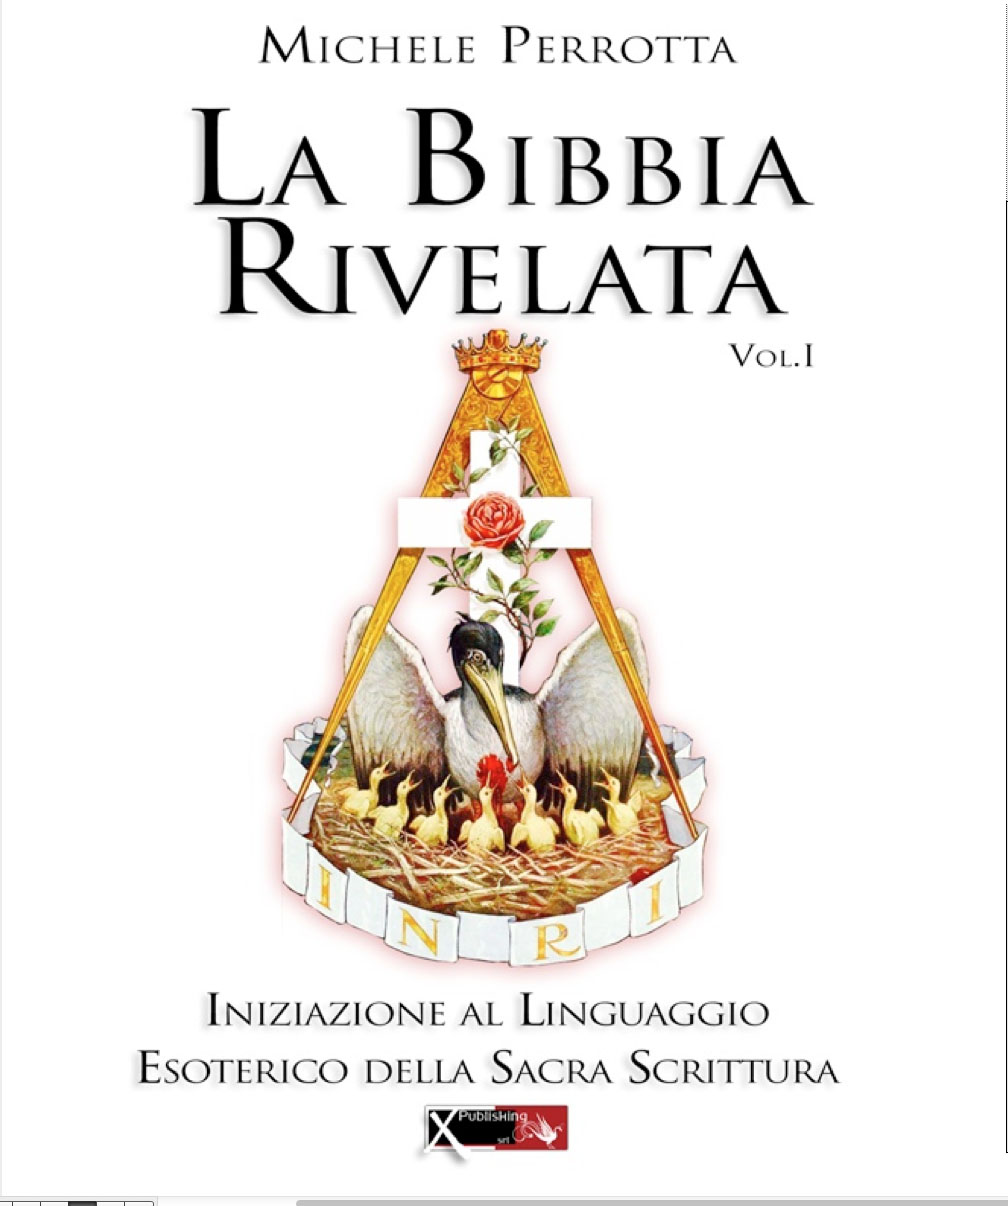 Libri Michele Perrotta - La Bibbia Rivelata Vol 01 NUOVO SIGILLATO, EDIZIONE DEL 06/06/2016 SUBITO DISPONIBILE